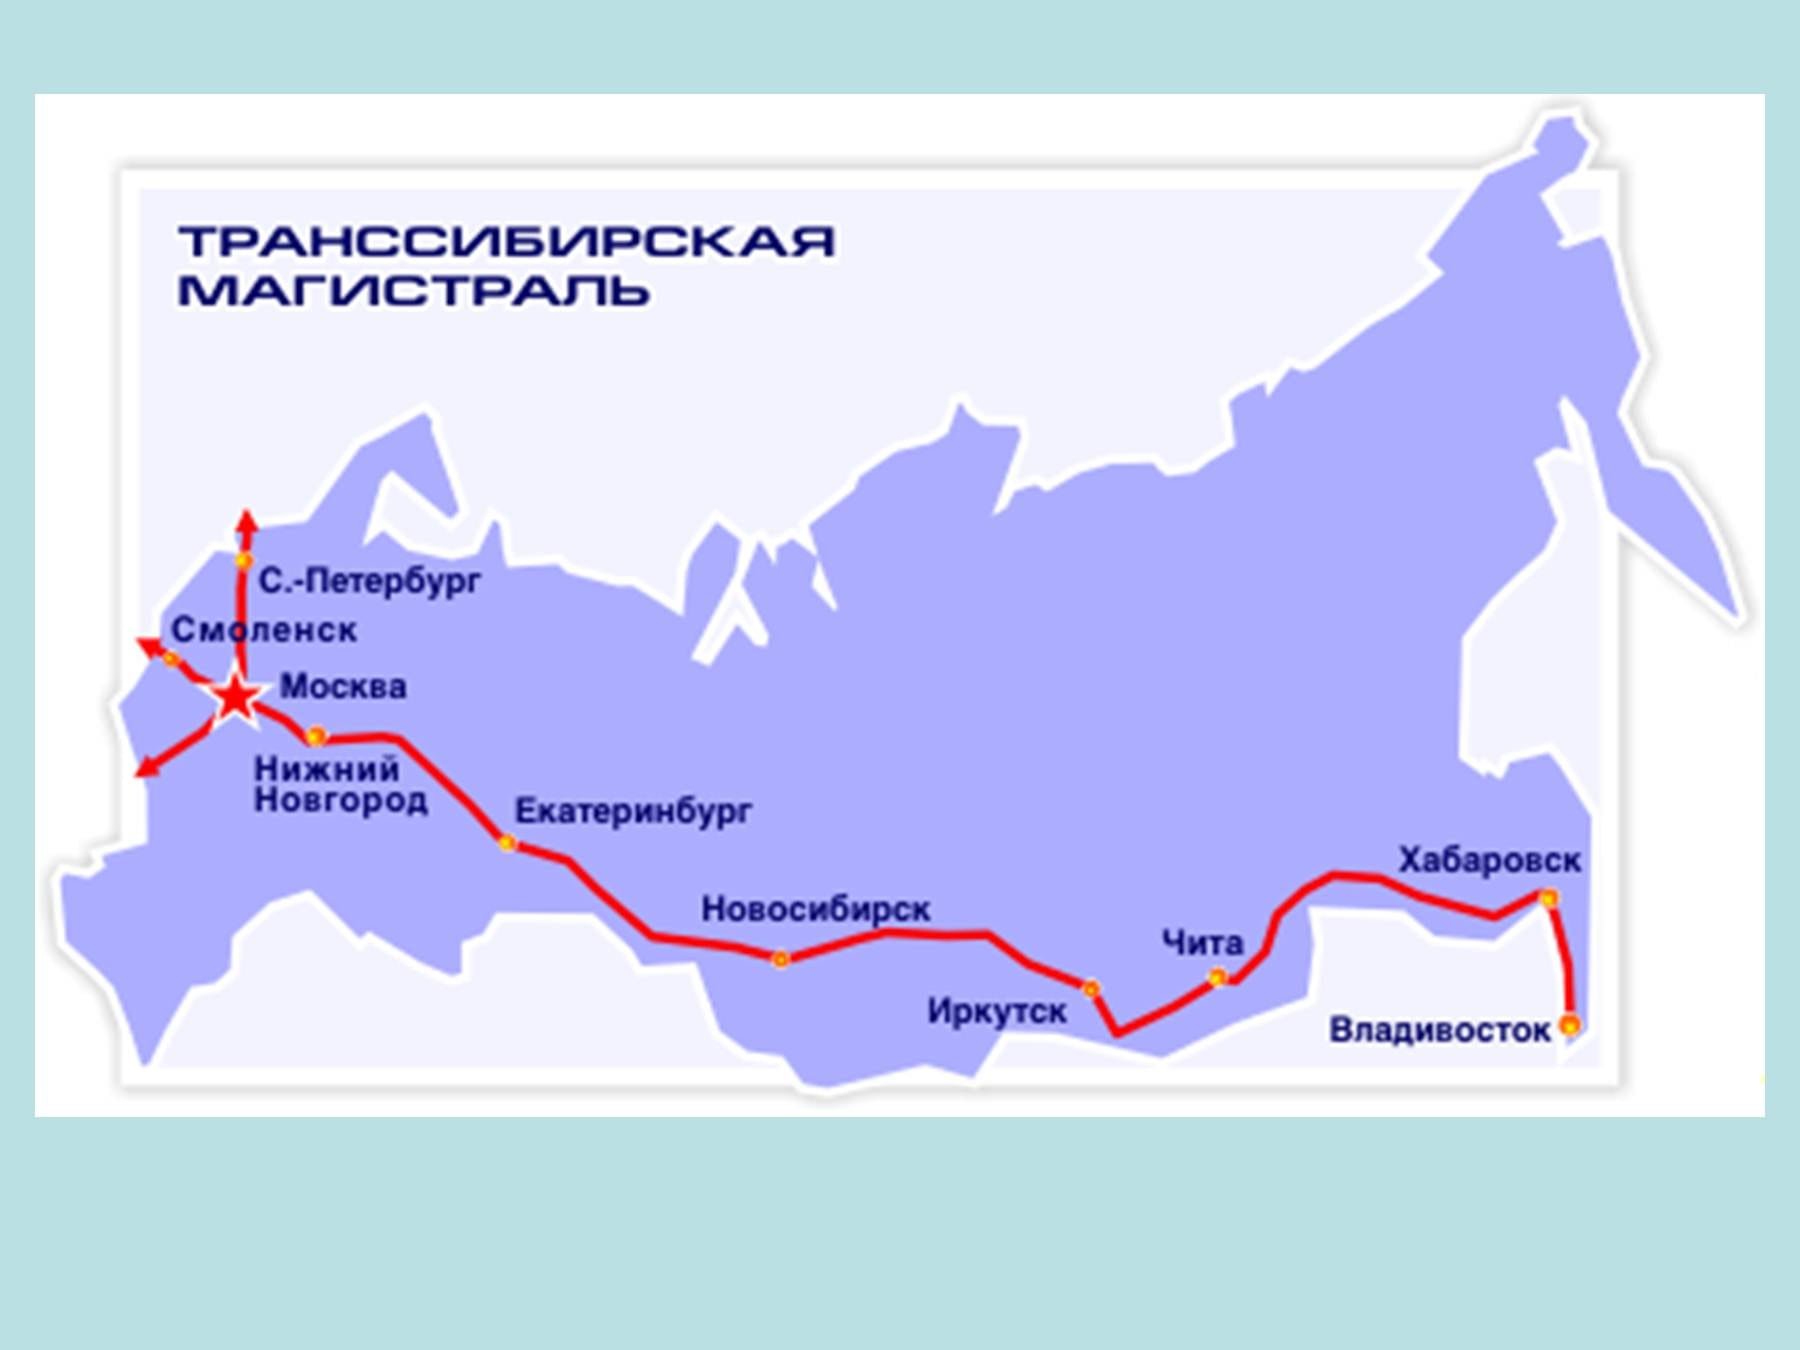 Какие крупные города проходит транссибирская магистраль. Транссибирская магистраль города. Транссибирская магистраль протяженность. Транссиб Железнодорожная магистраль. Транссибирская Железнодорожная магистраль на карте России 19 века.